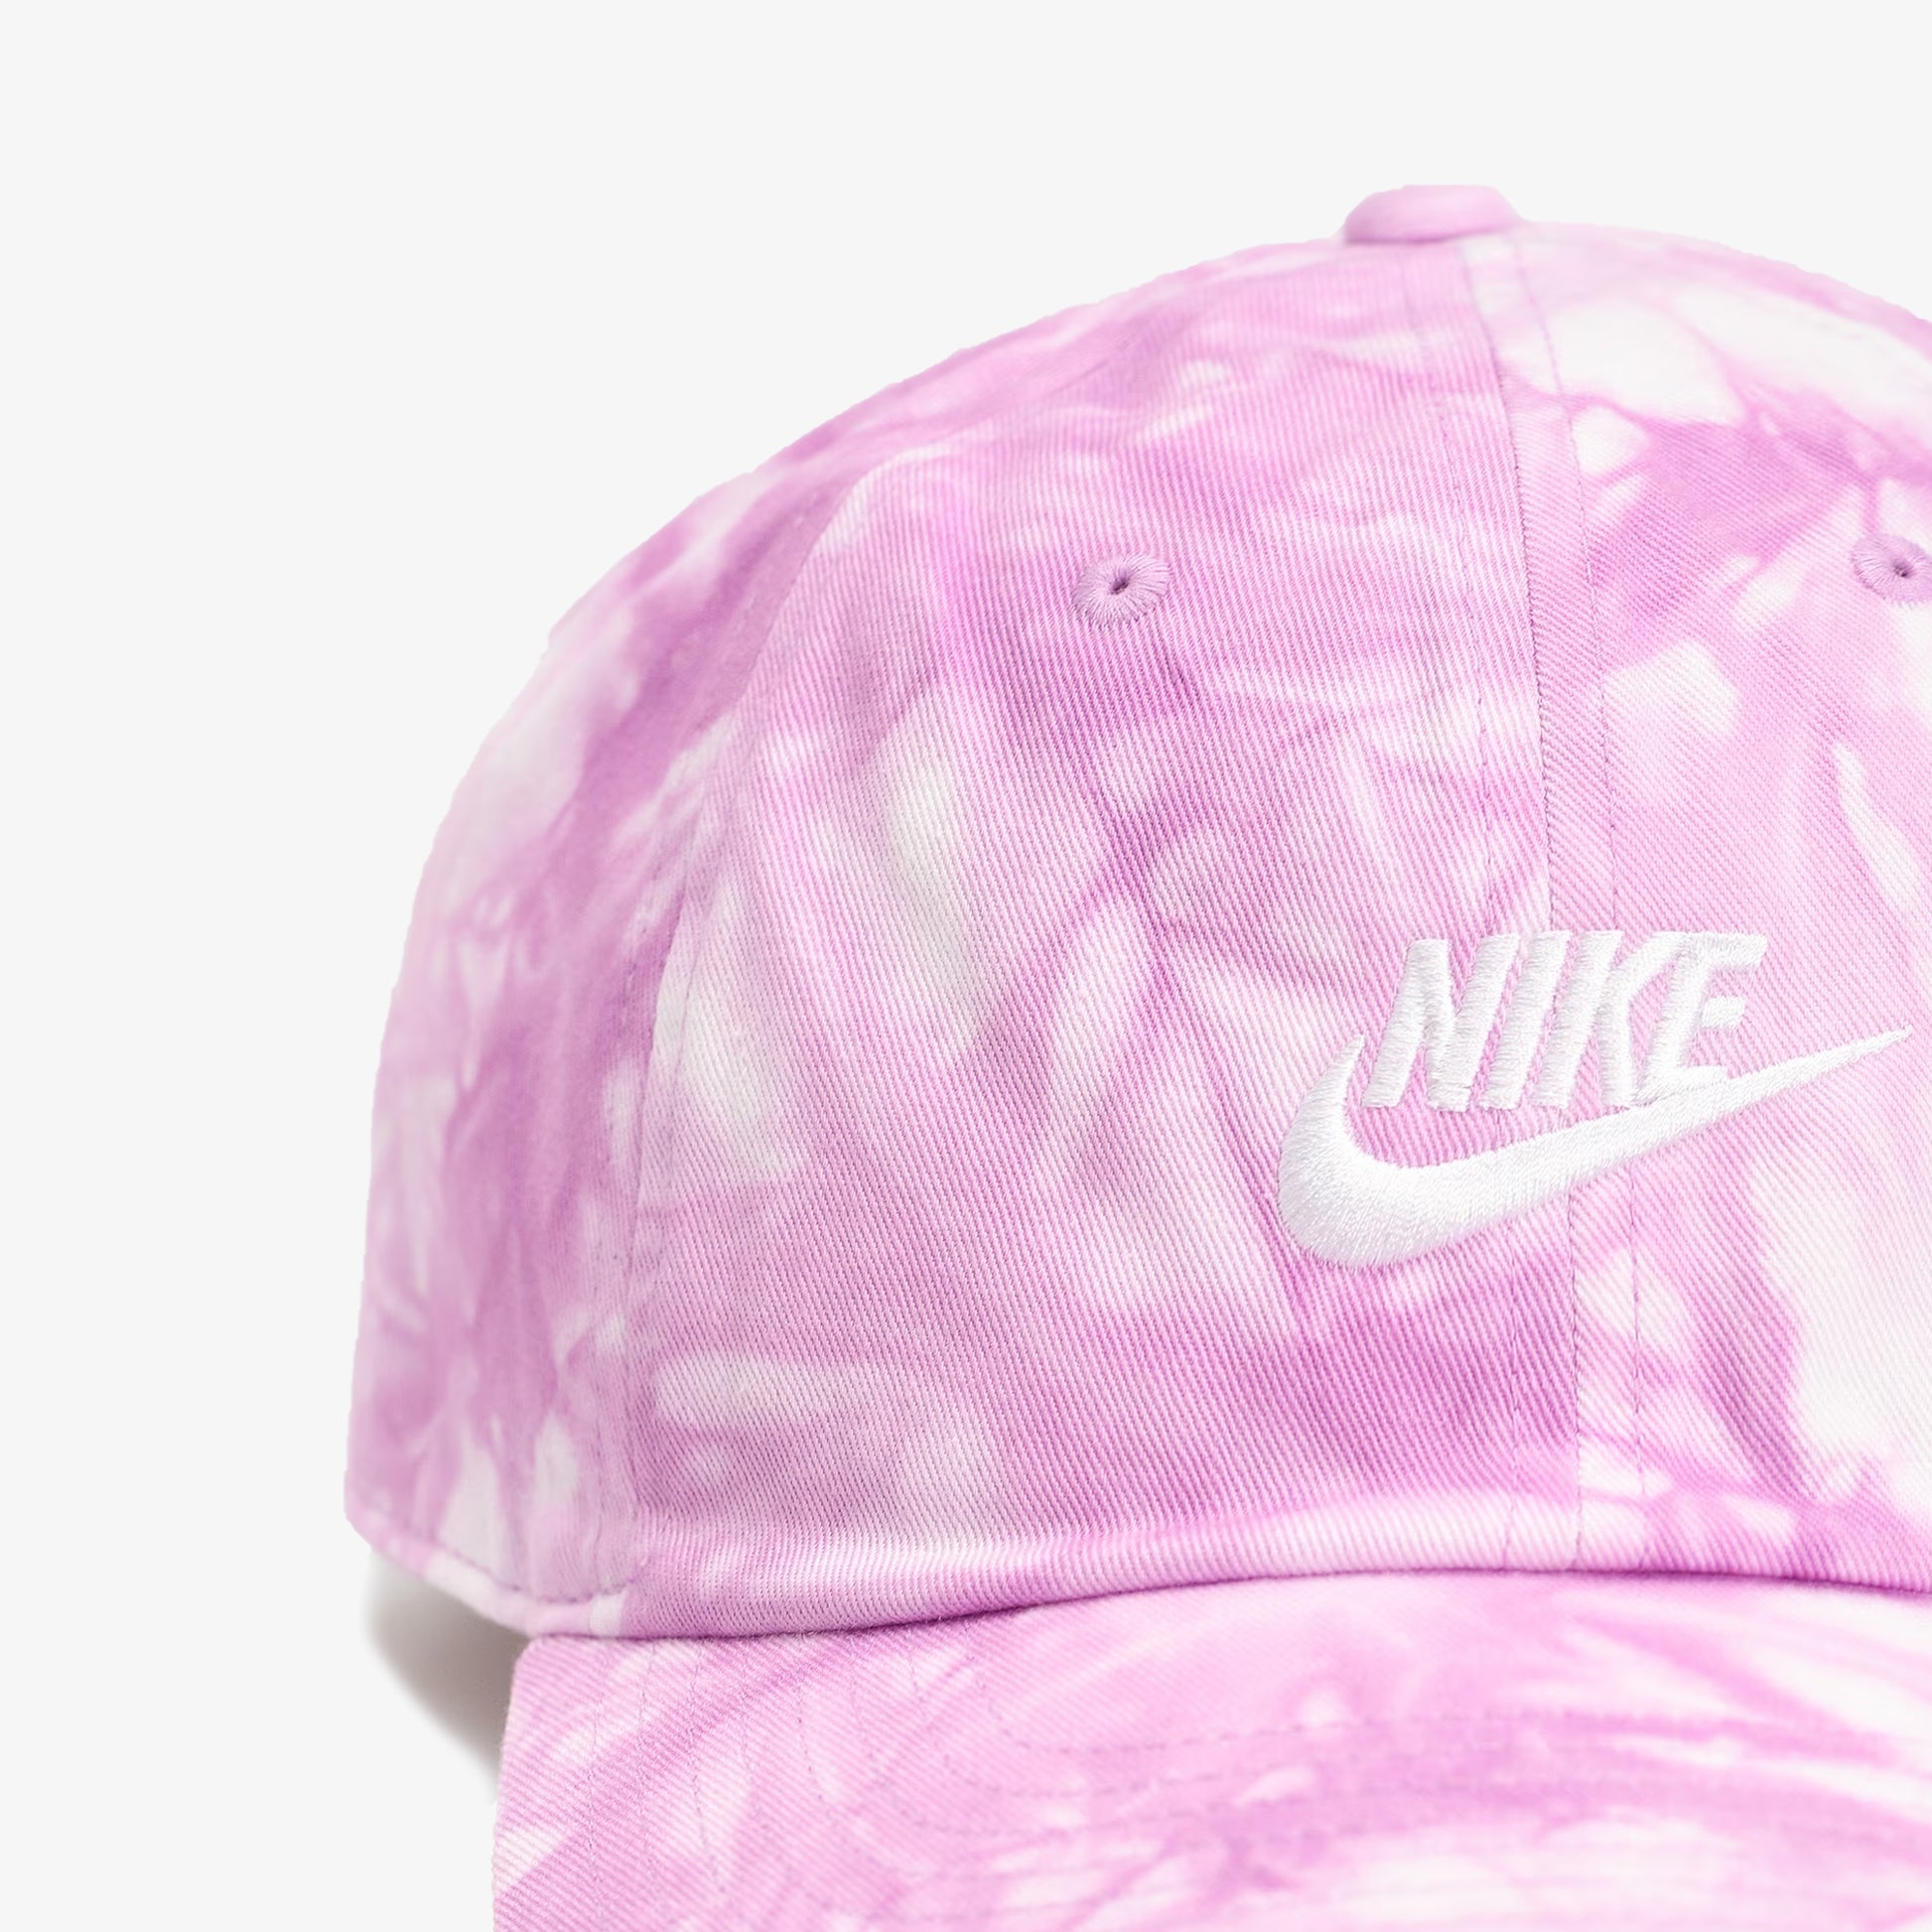 Nike Cap / hat pink - Caps / hats - Accessoires - Ladies 